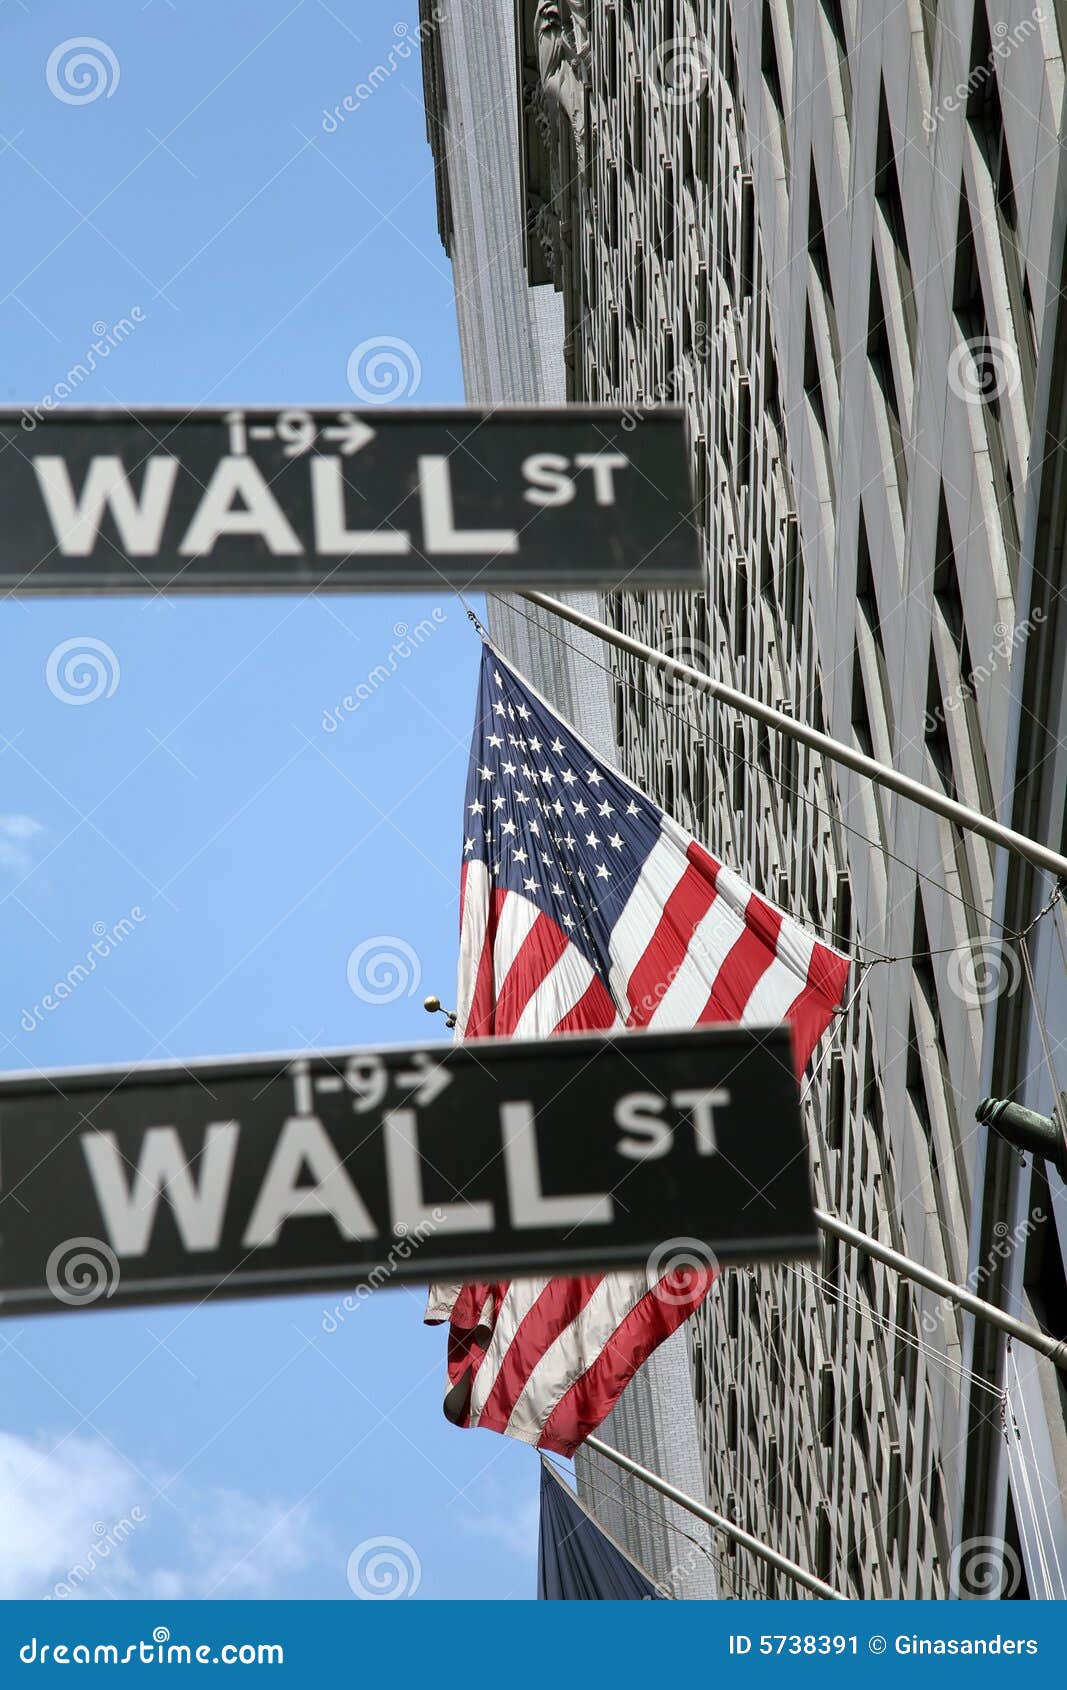 EUA, New York, Wallstreet, troca conservada em estoque. Troca conservada em estoque em New York, Wallstreet, EUA